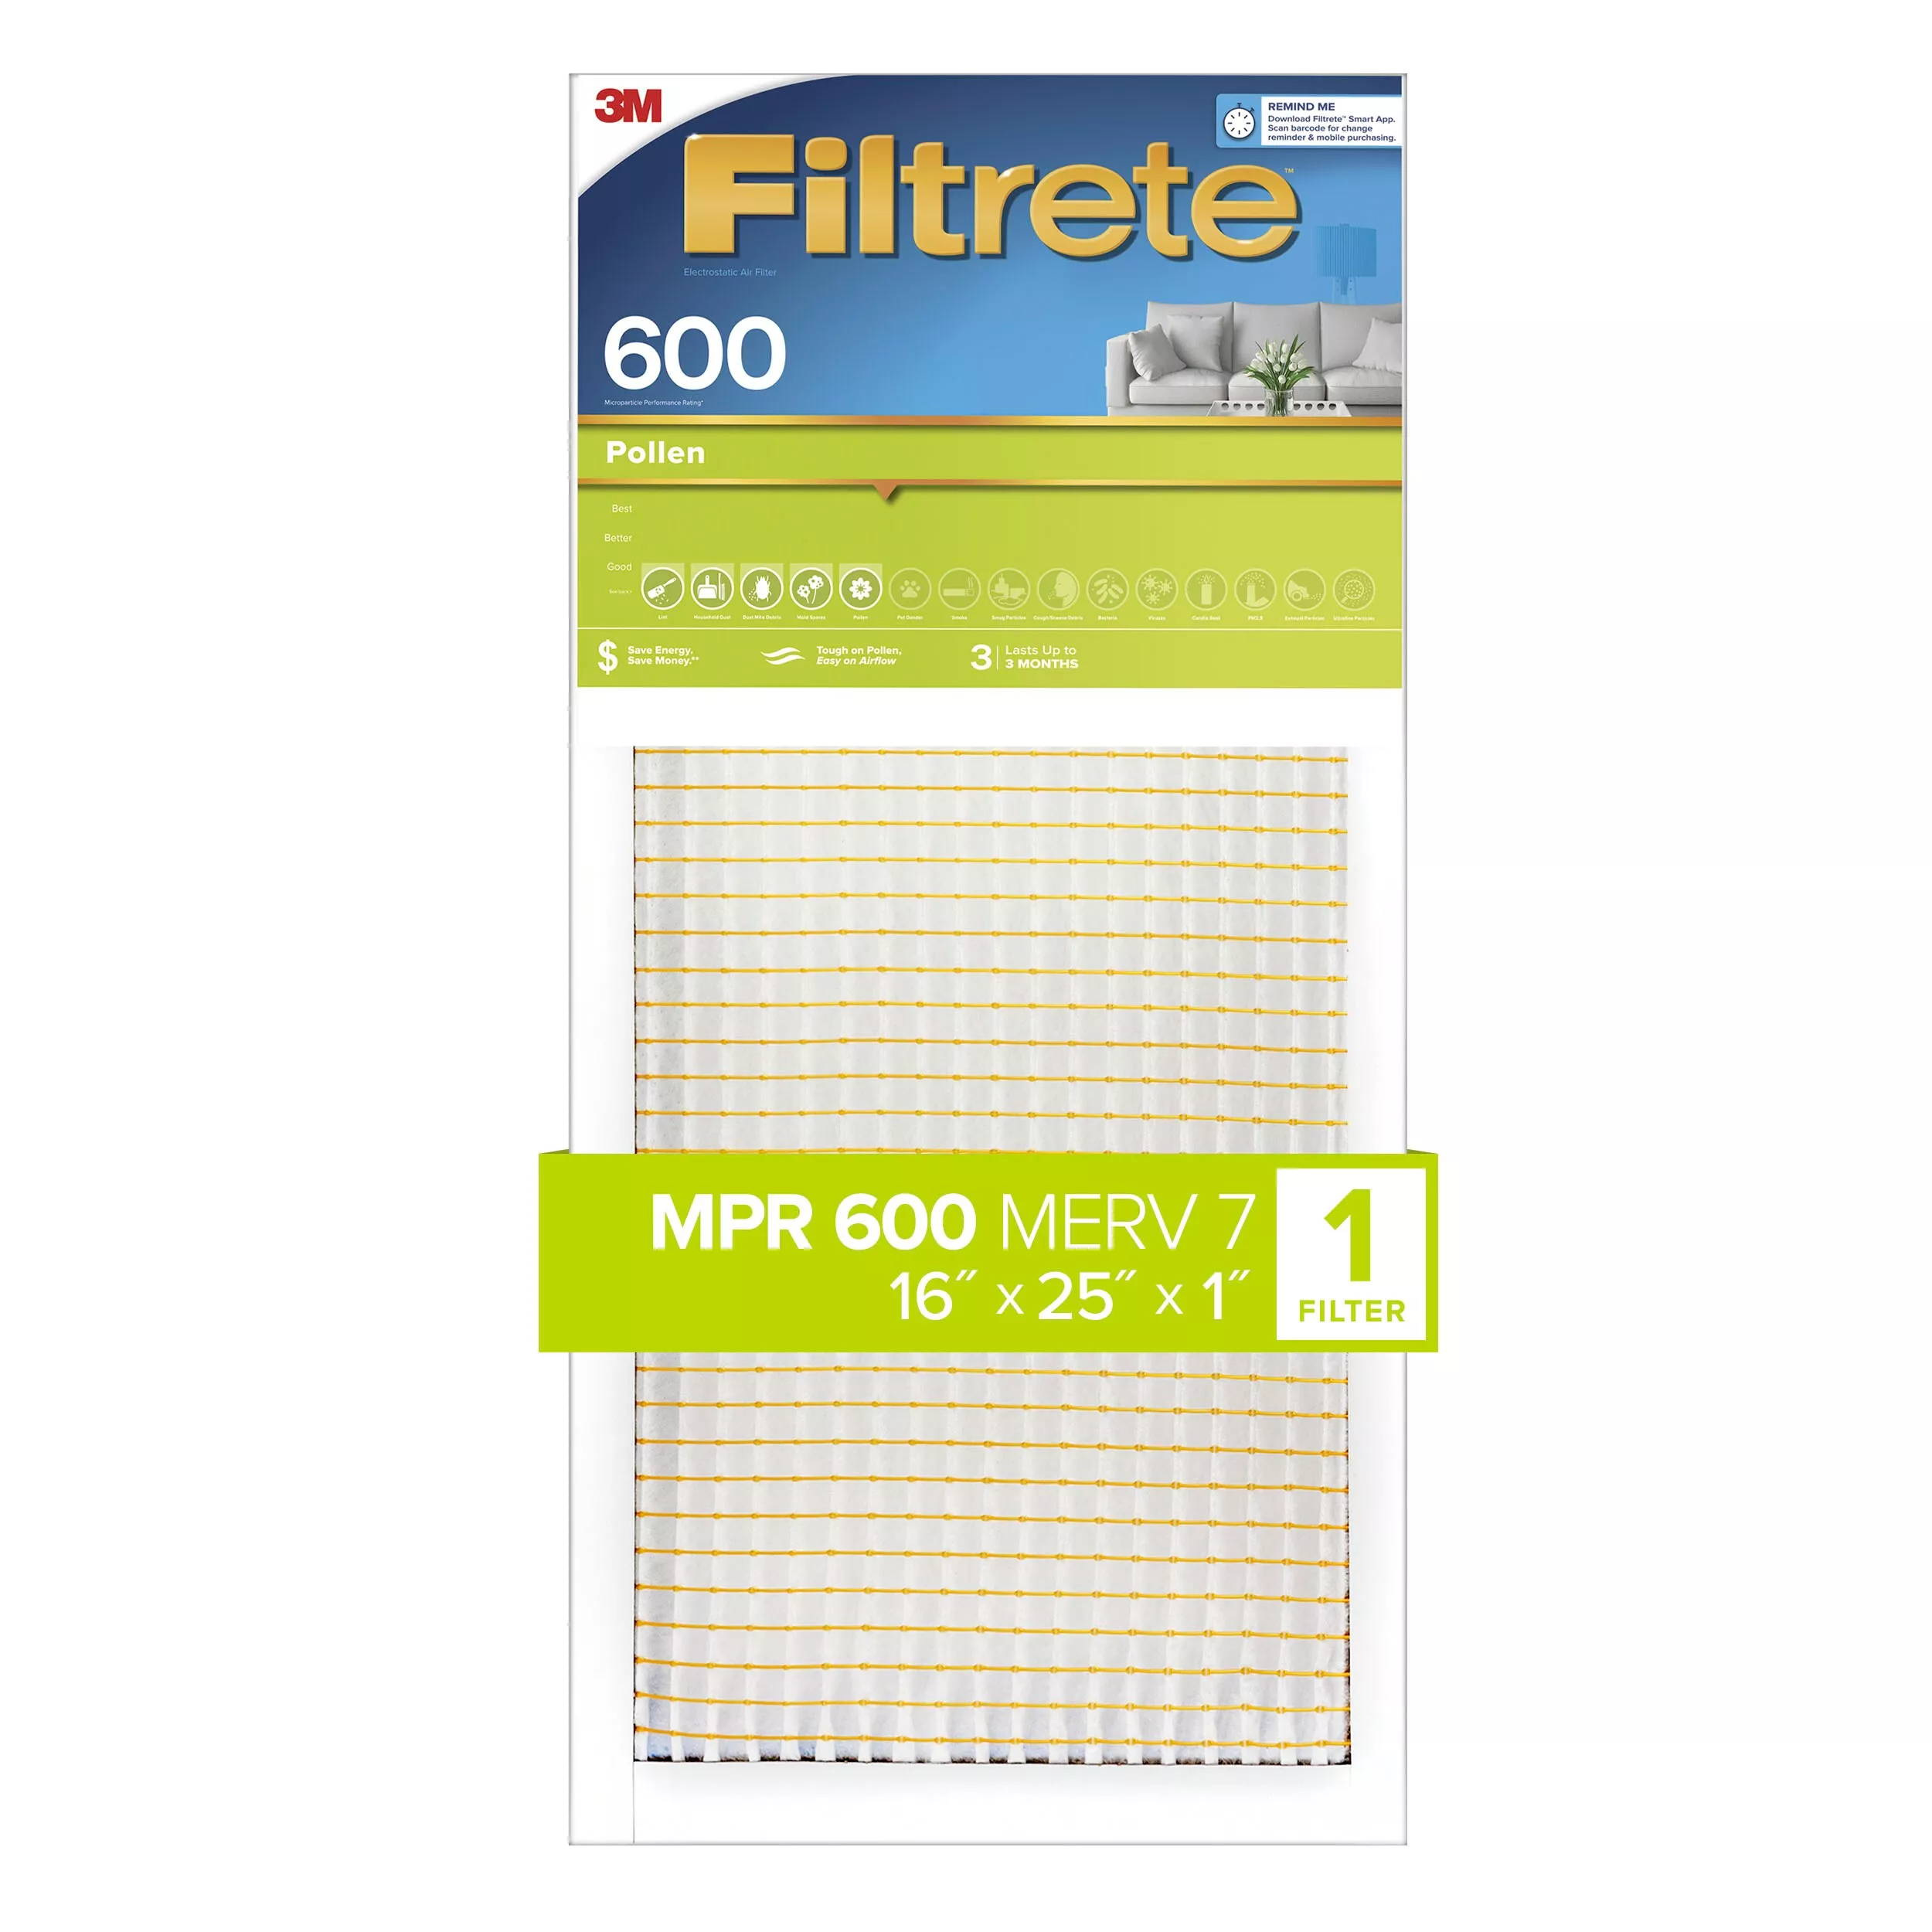 Filtrete™ Pollen Air Filter, 600 MPR, 9831-4, 16 in x 25 in x 1 in (40.6
cm x 63.5 cm x 2.54 cm)